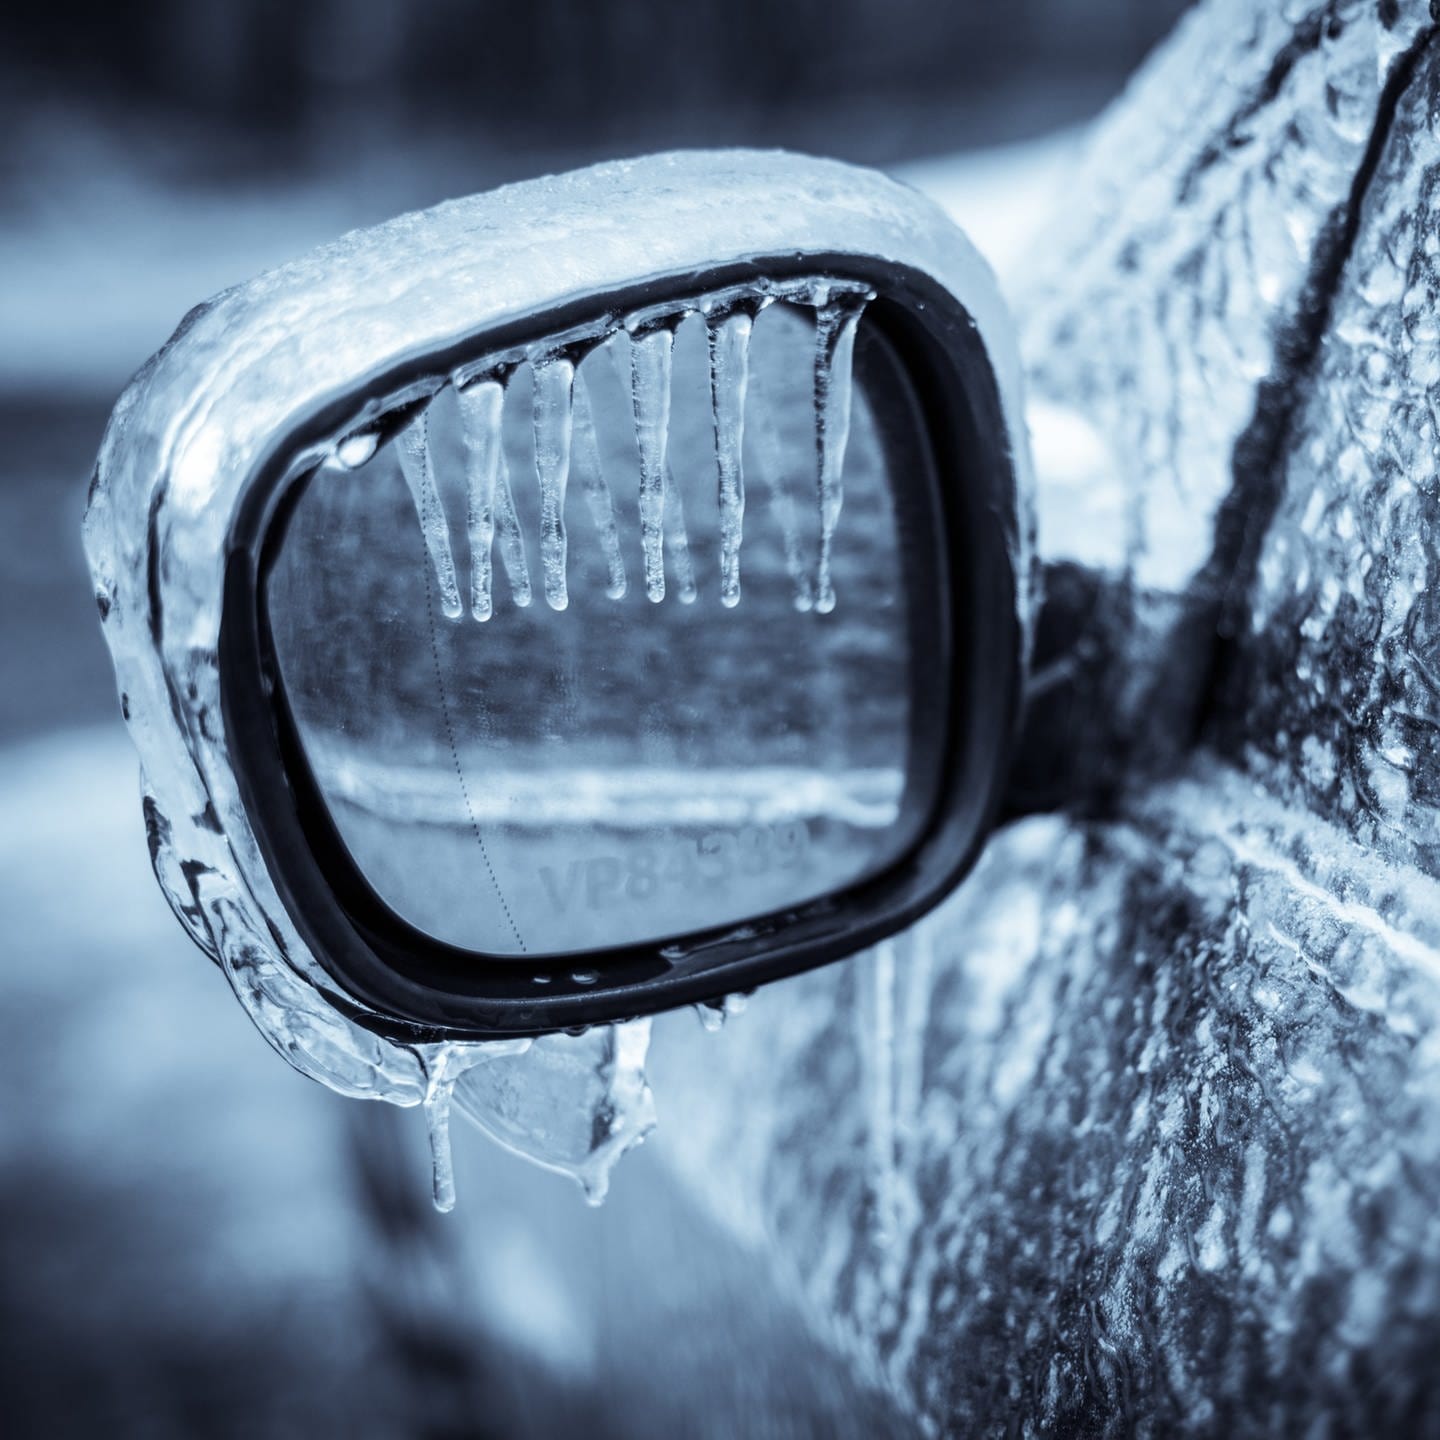 Sicher fahren bei Schnee und Eis  Strafen für Autofahrer im Winter - SWR1  RP - SWR1